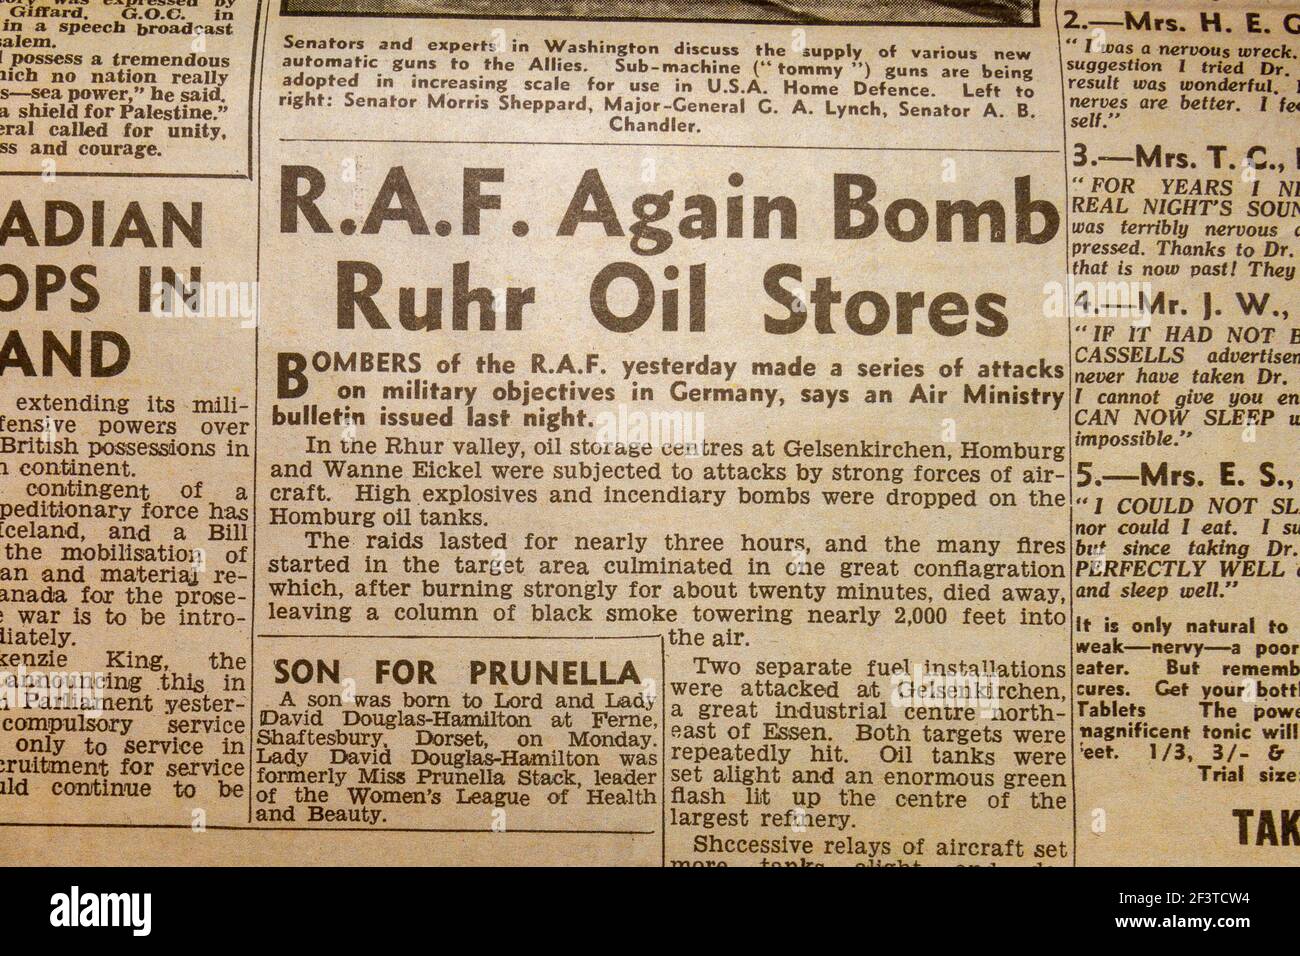 Titre « RAF Again Bomb Ruhr Oil Stores » sur les raids de bombardement au-dessus de l'Allemagne, Daily Sketch Newspaper (réplique), 19 juin '40 (pendant la bataille d'Angleterre) Banque D'Images